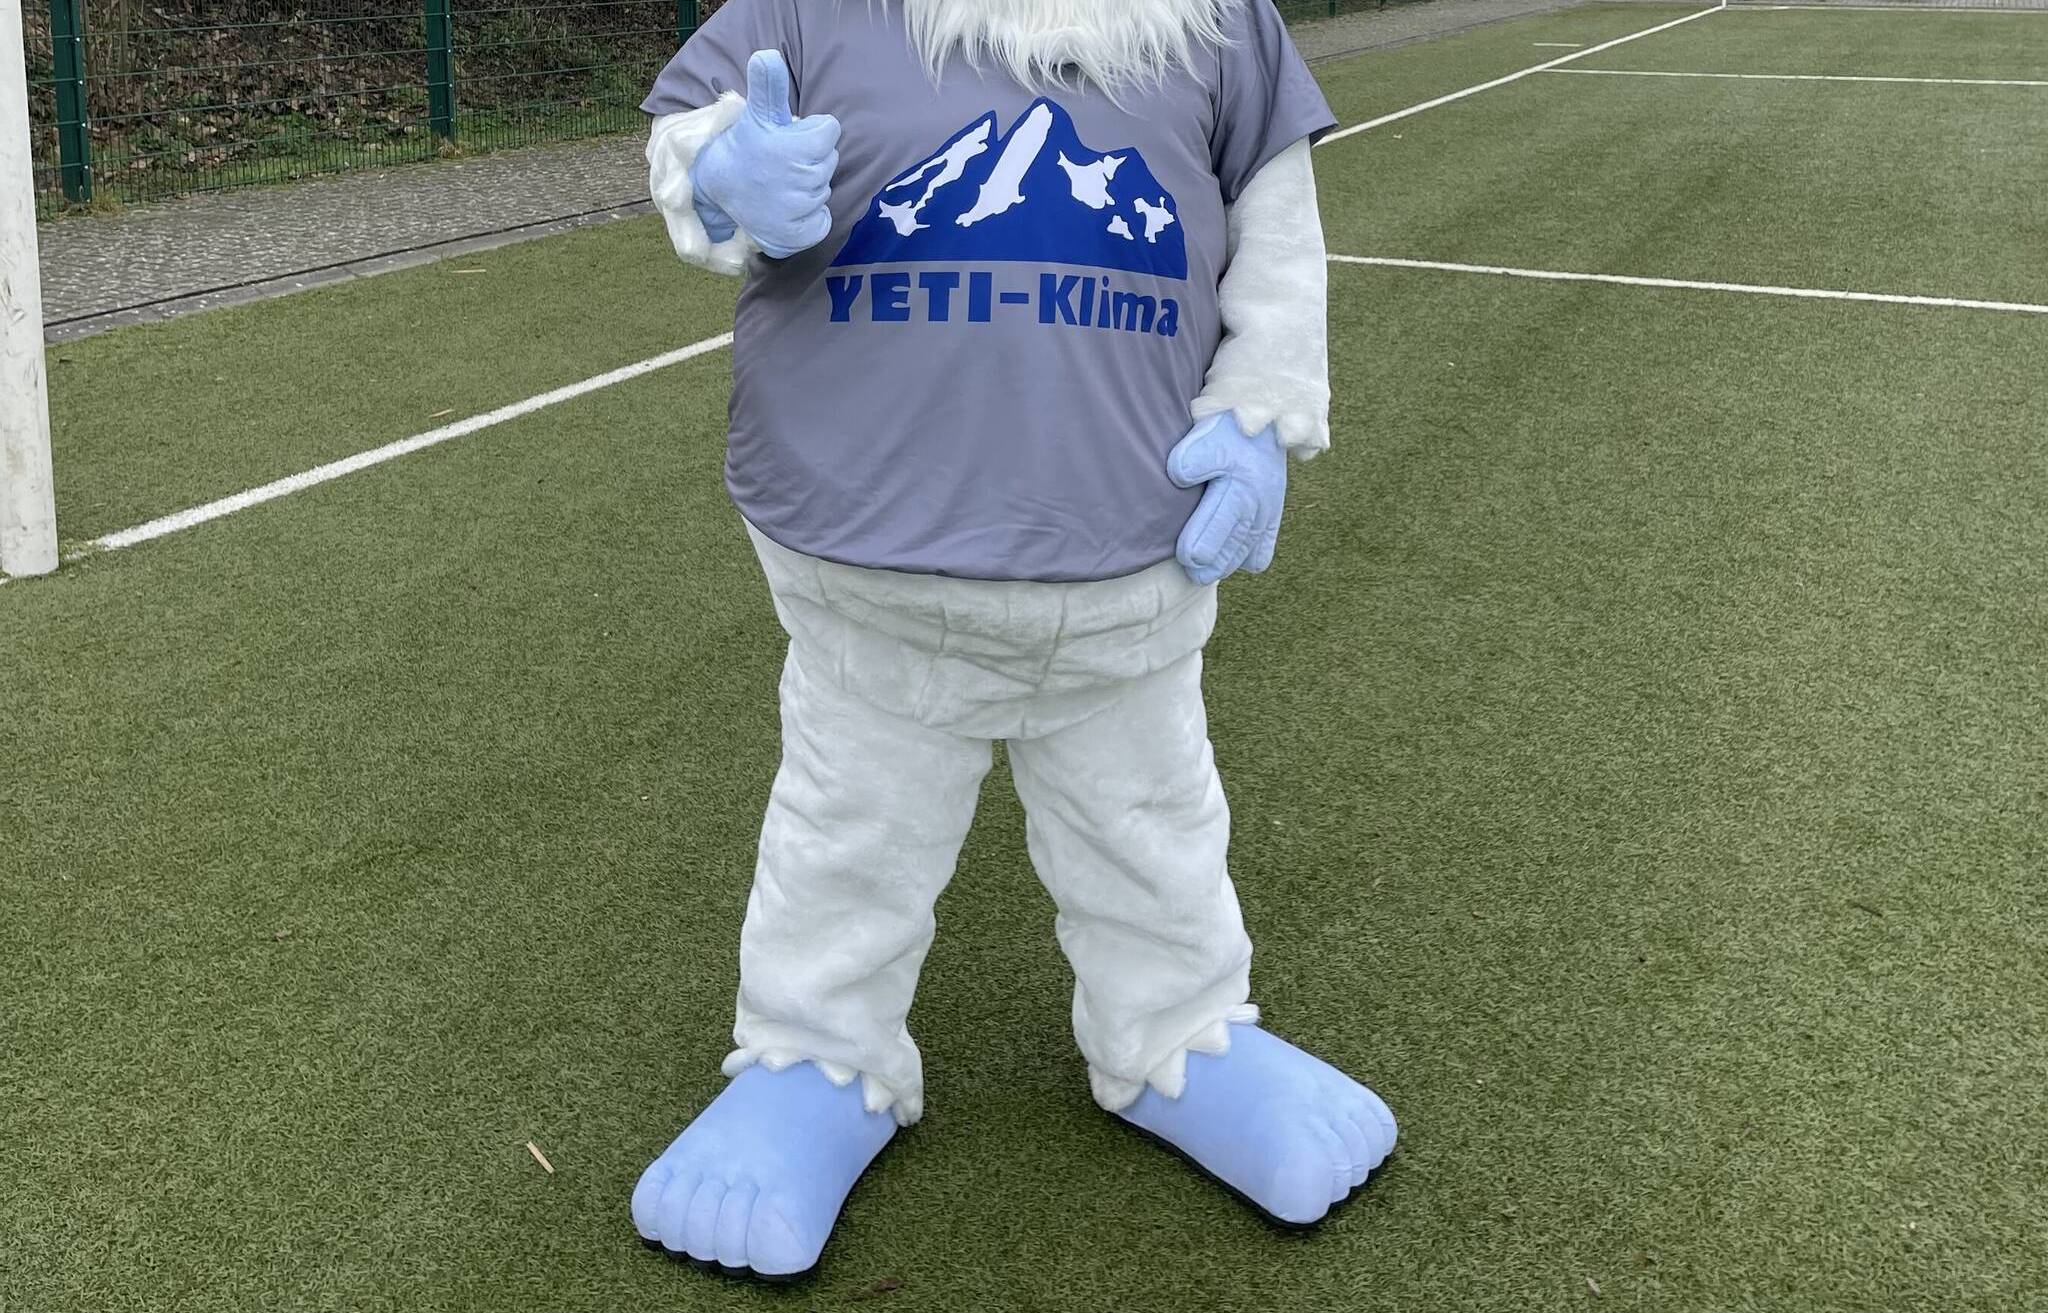  Der Yeti ist das Maskottchen des VfB Hochneukirch und gibt dem Cup seinen Namen. 